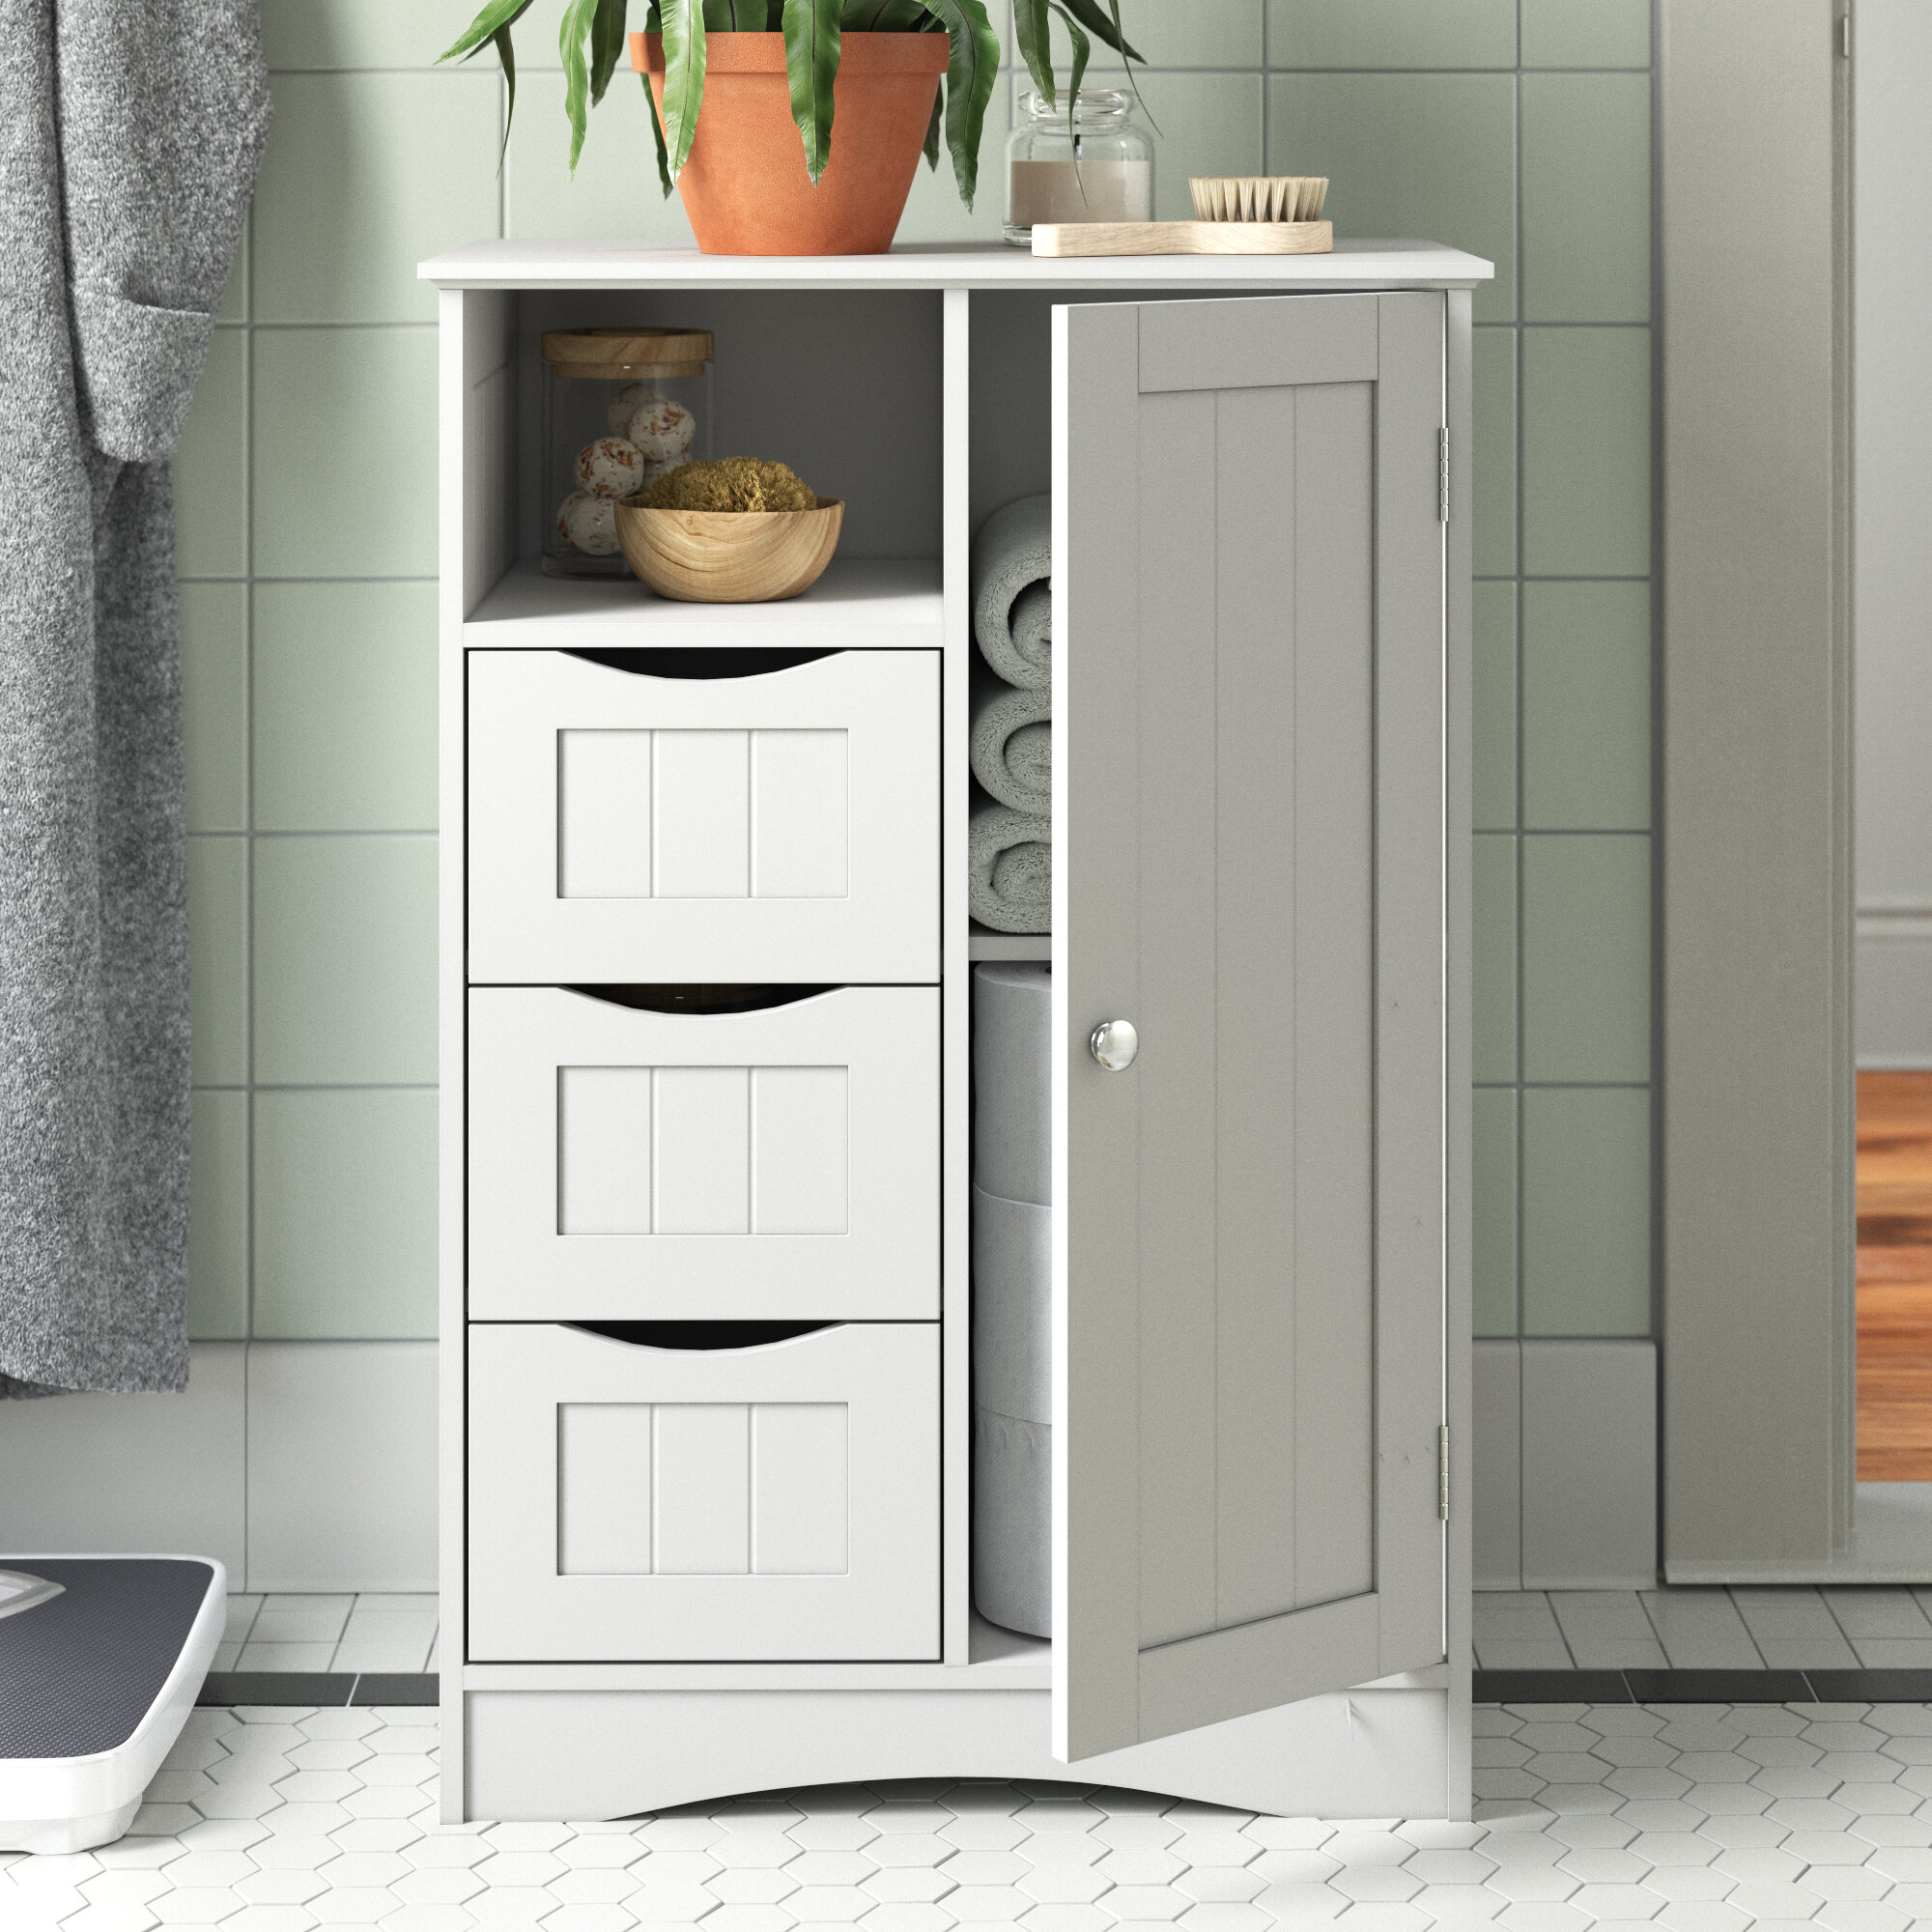 https://assets.wfcdn.com/im/54152223/compr-r85/1197/119793216/caril-freestanding-bathroom-cabinet.jpg